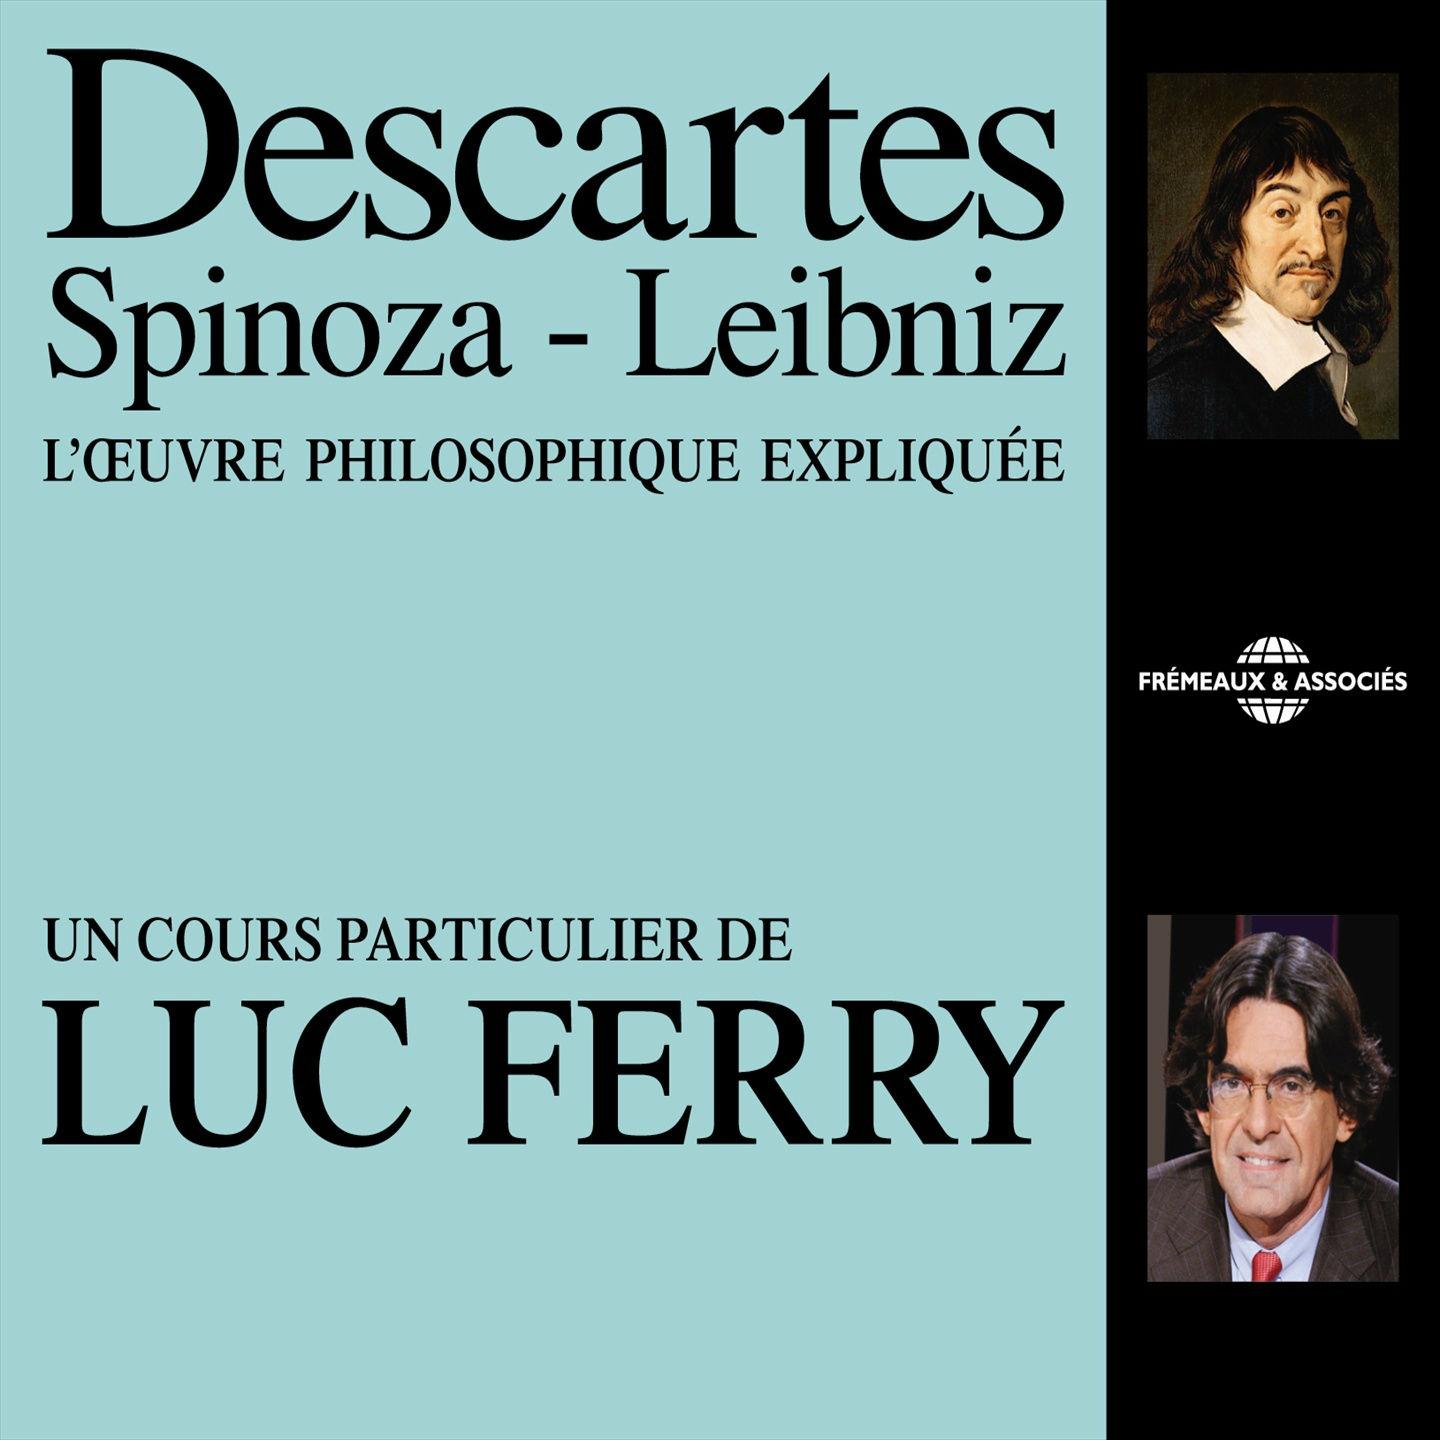 Descartes, Spinoza, Leibniz L' oeuvre philosophique explique e